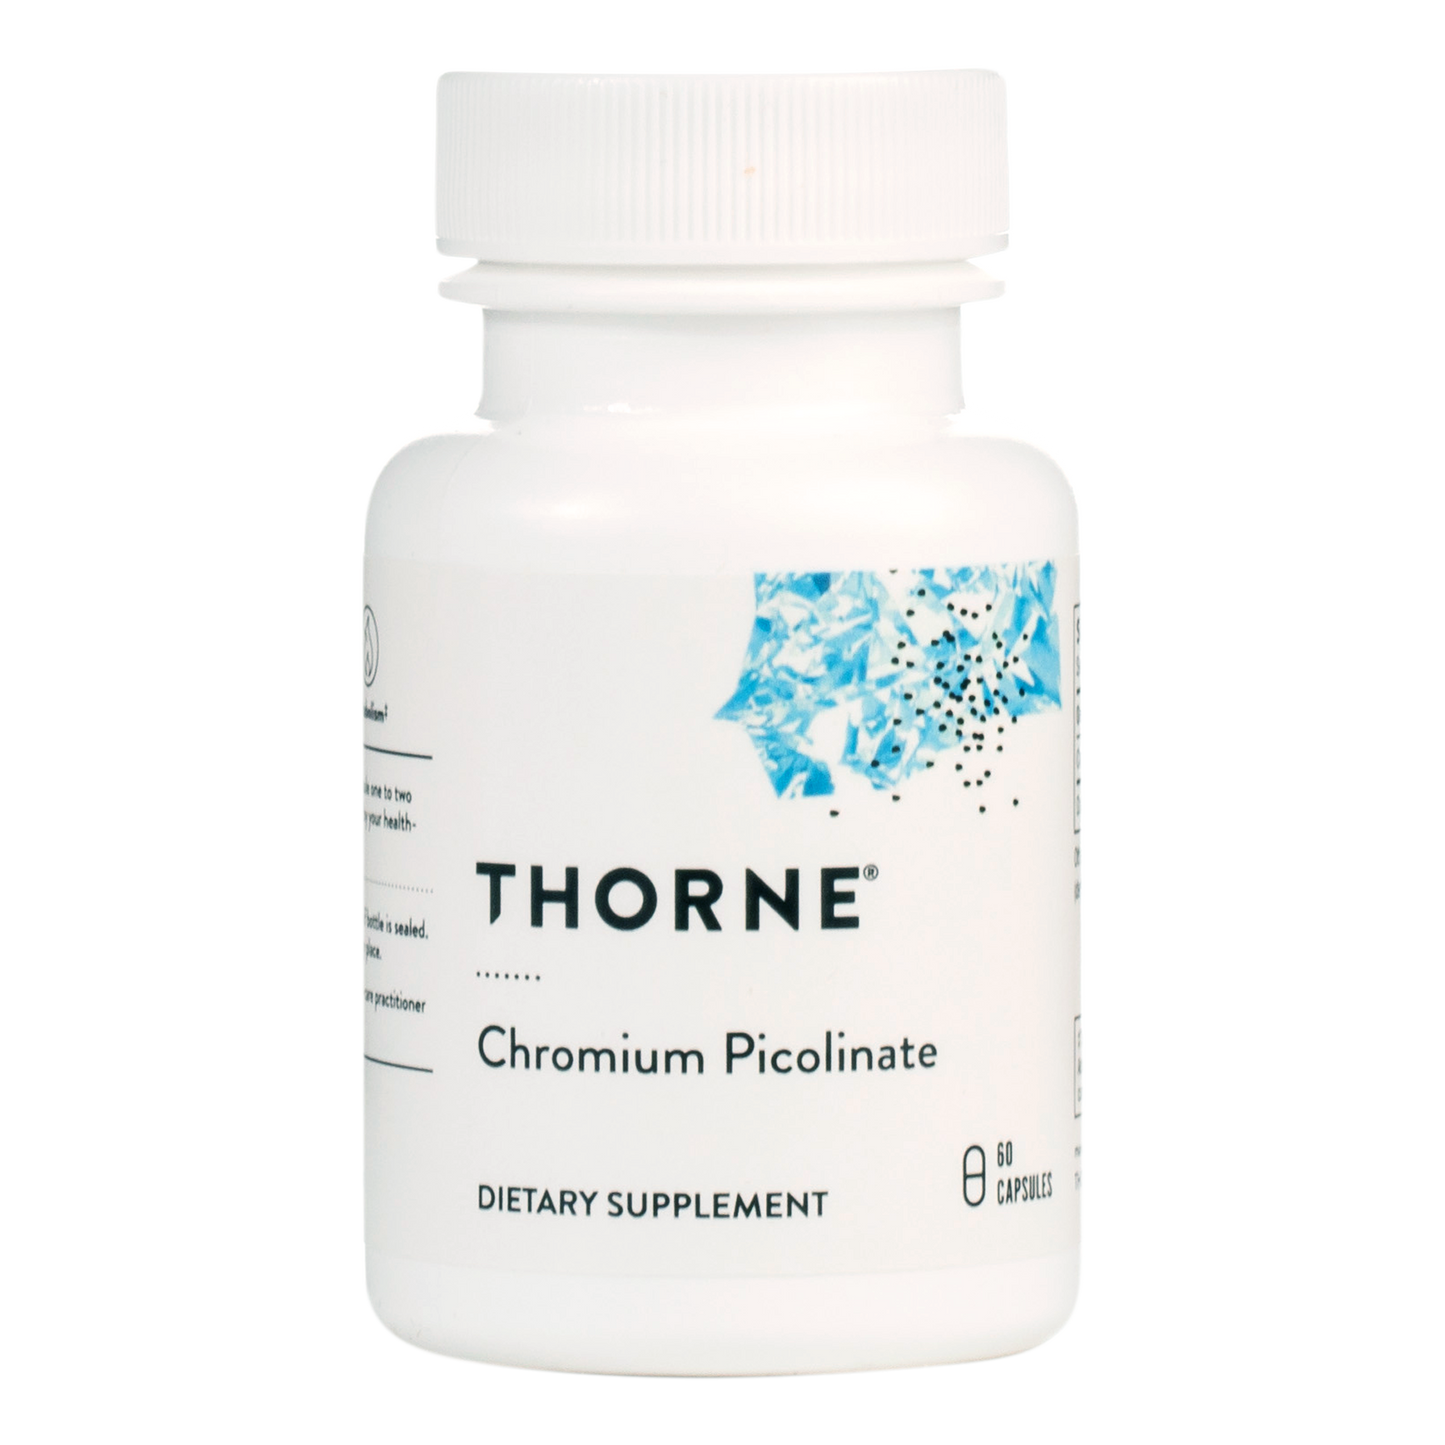 Thorne - Chromium Picolinate bottle